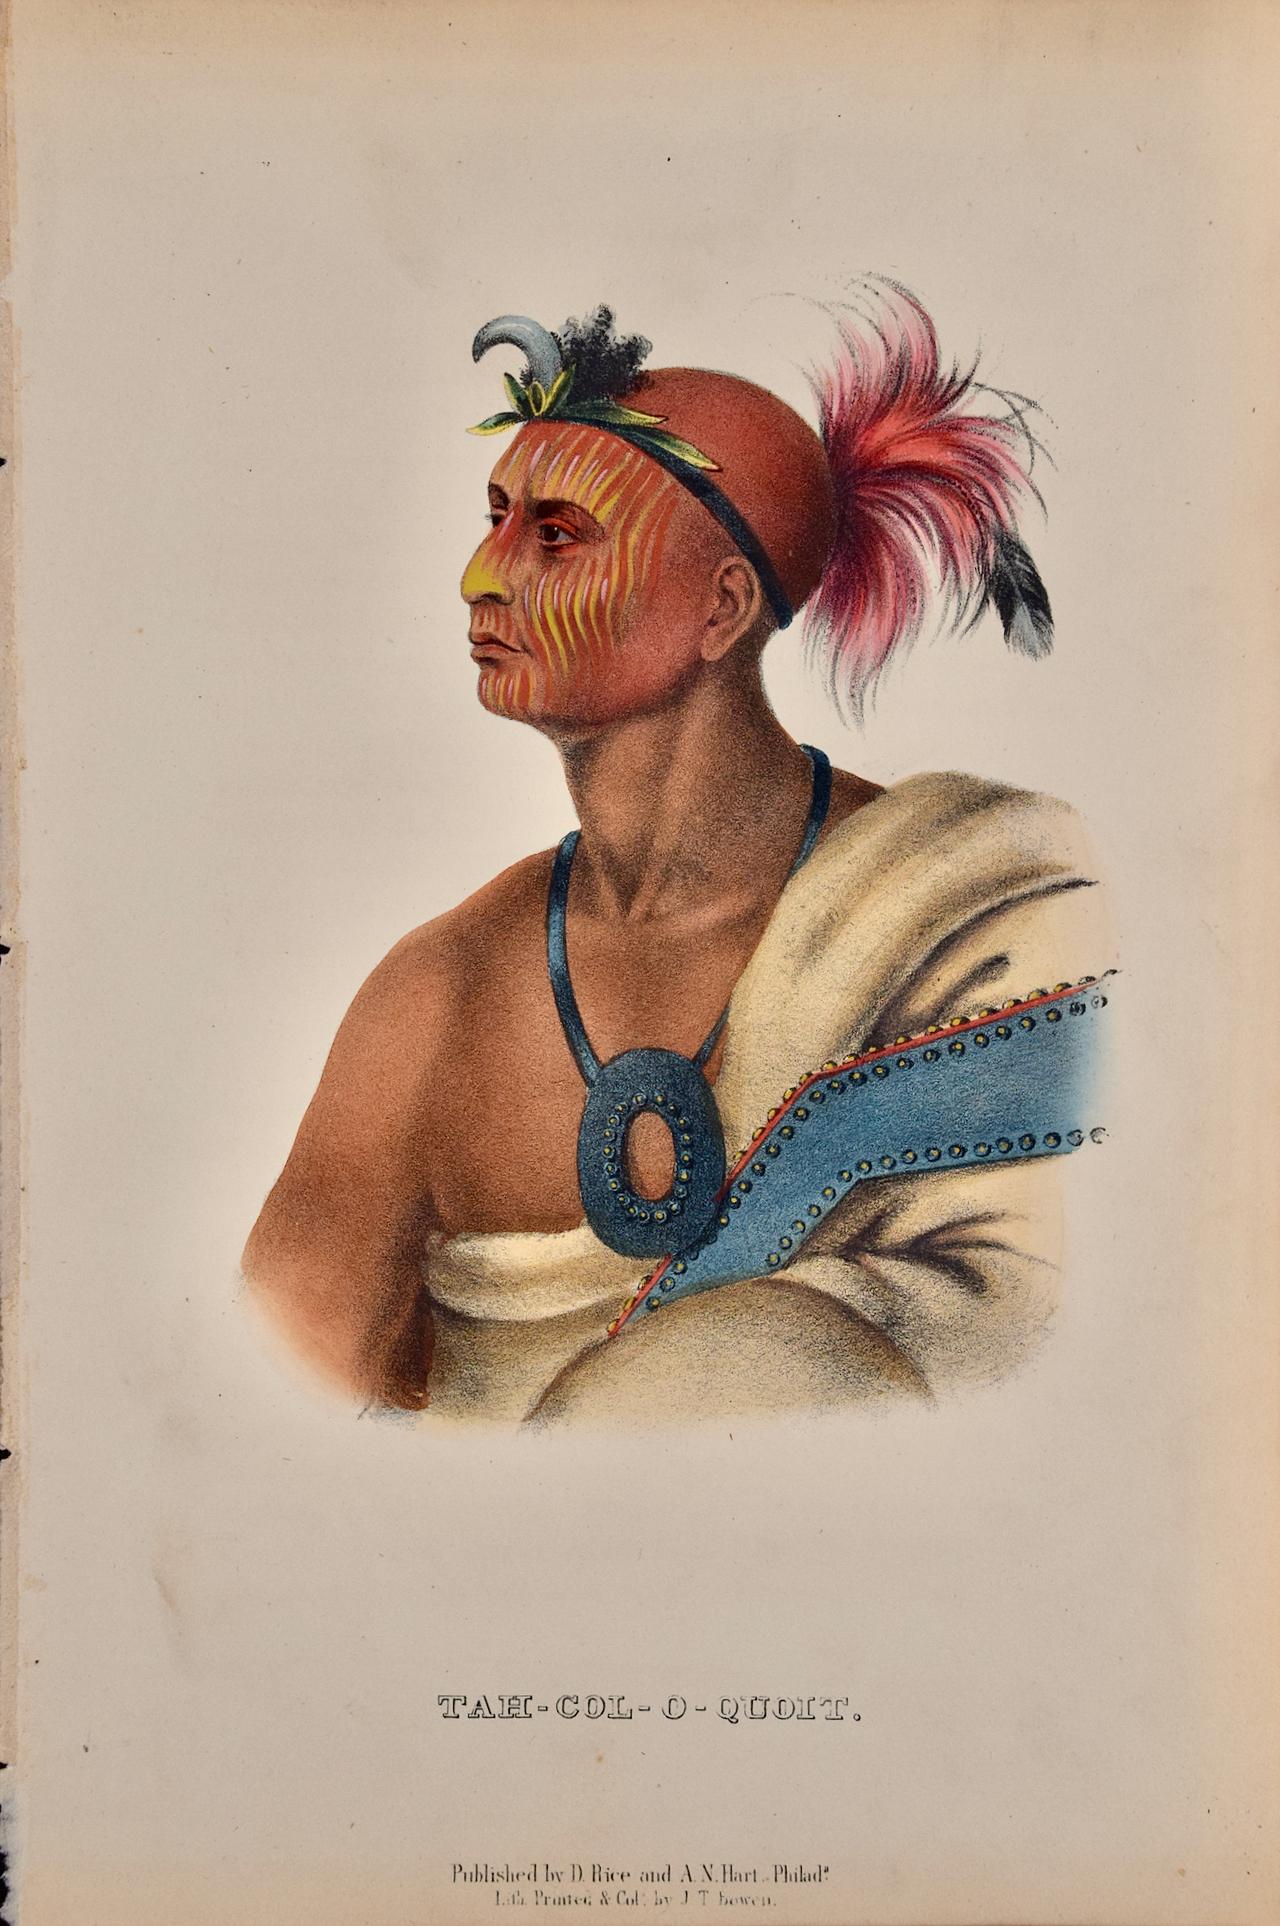 Tah-Col-O-Quoit : Lithographie originale de McKenney & Hall du 19ème siècle colorée à la main